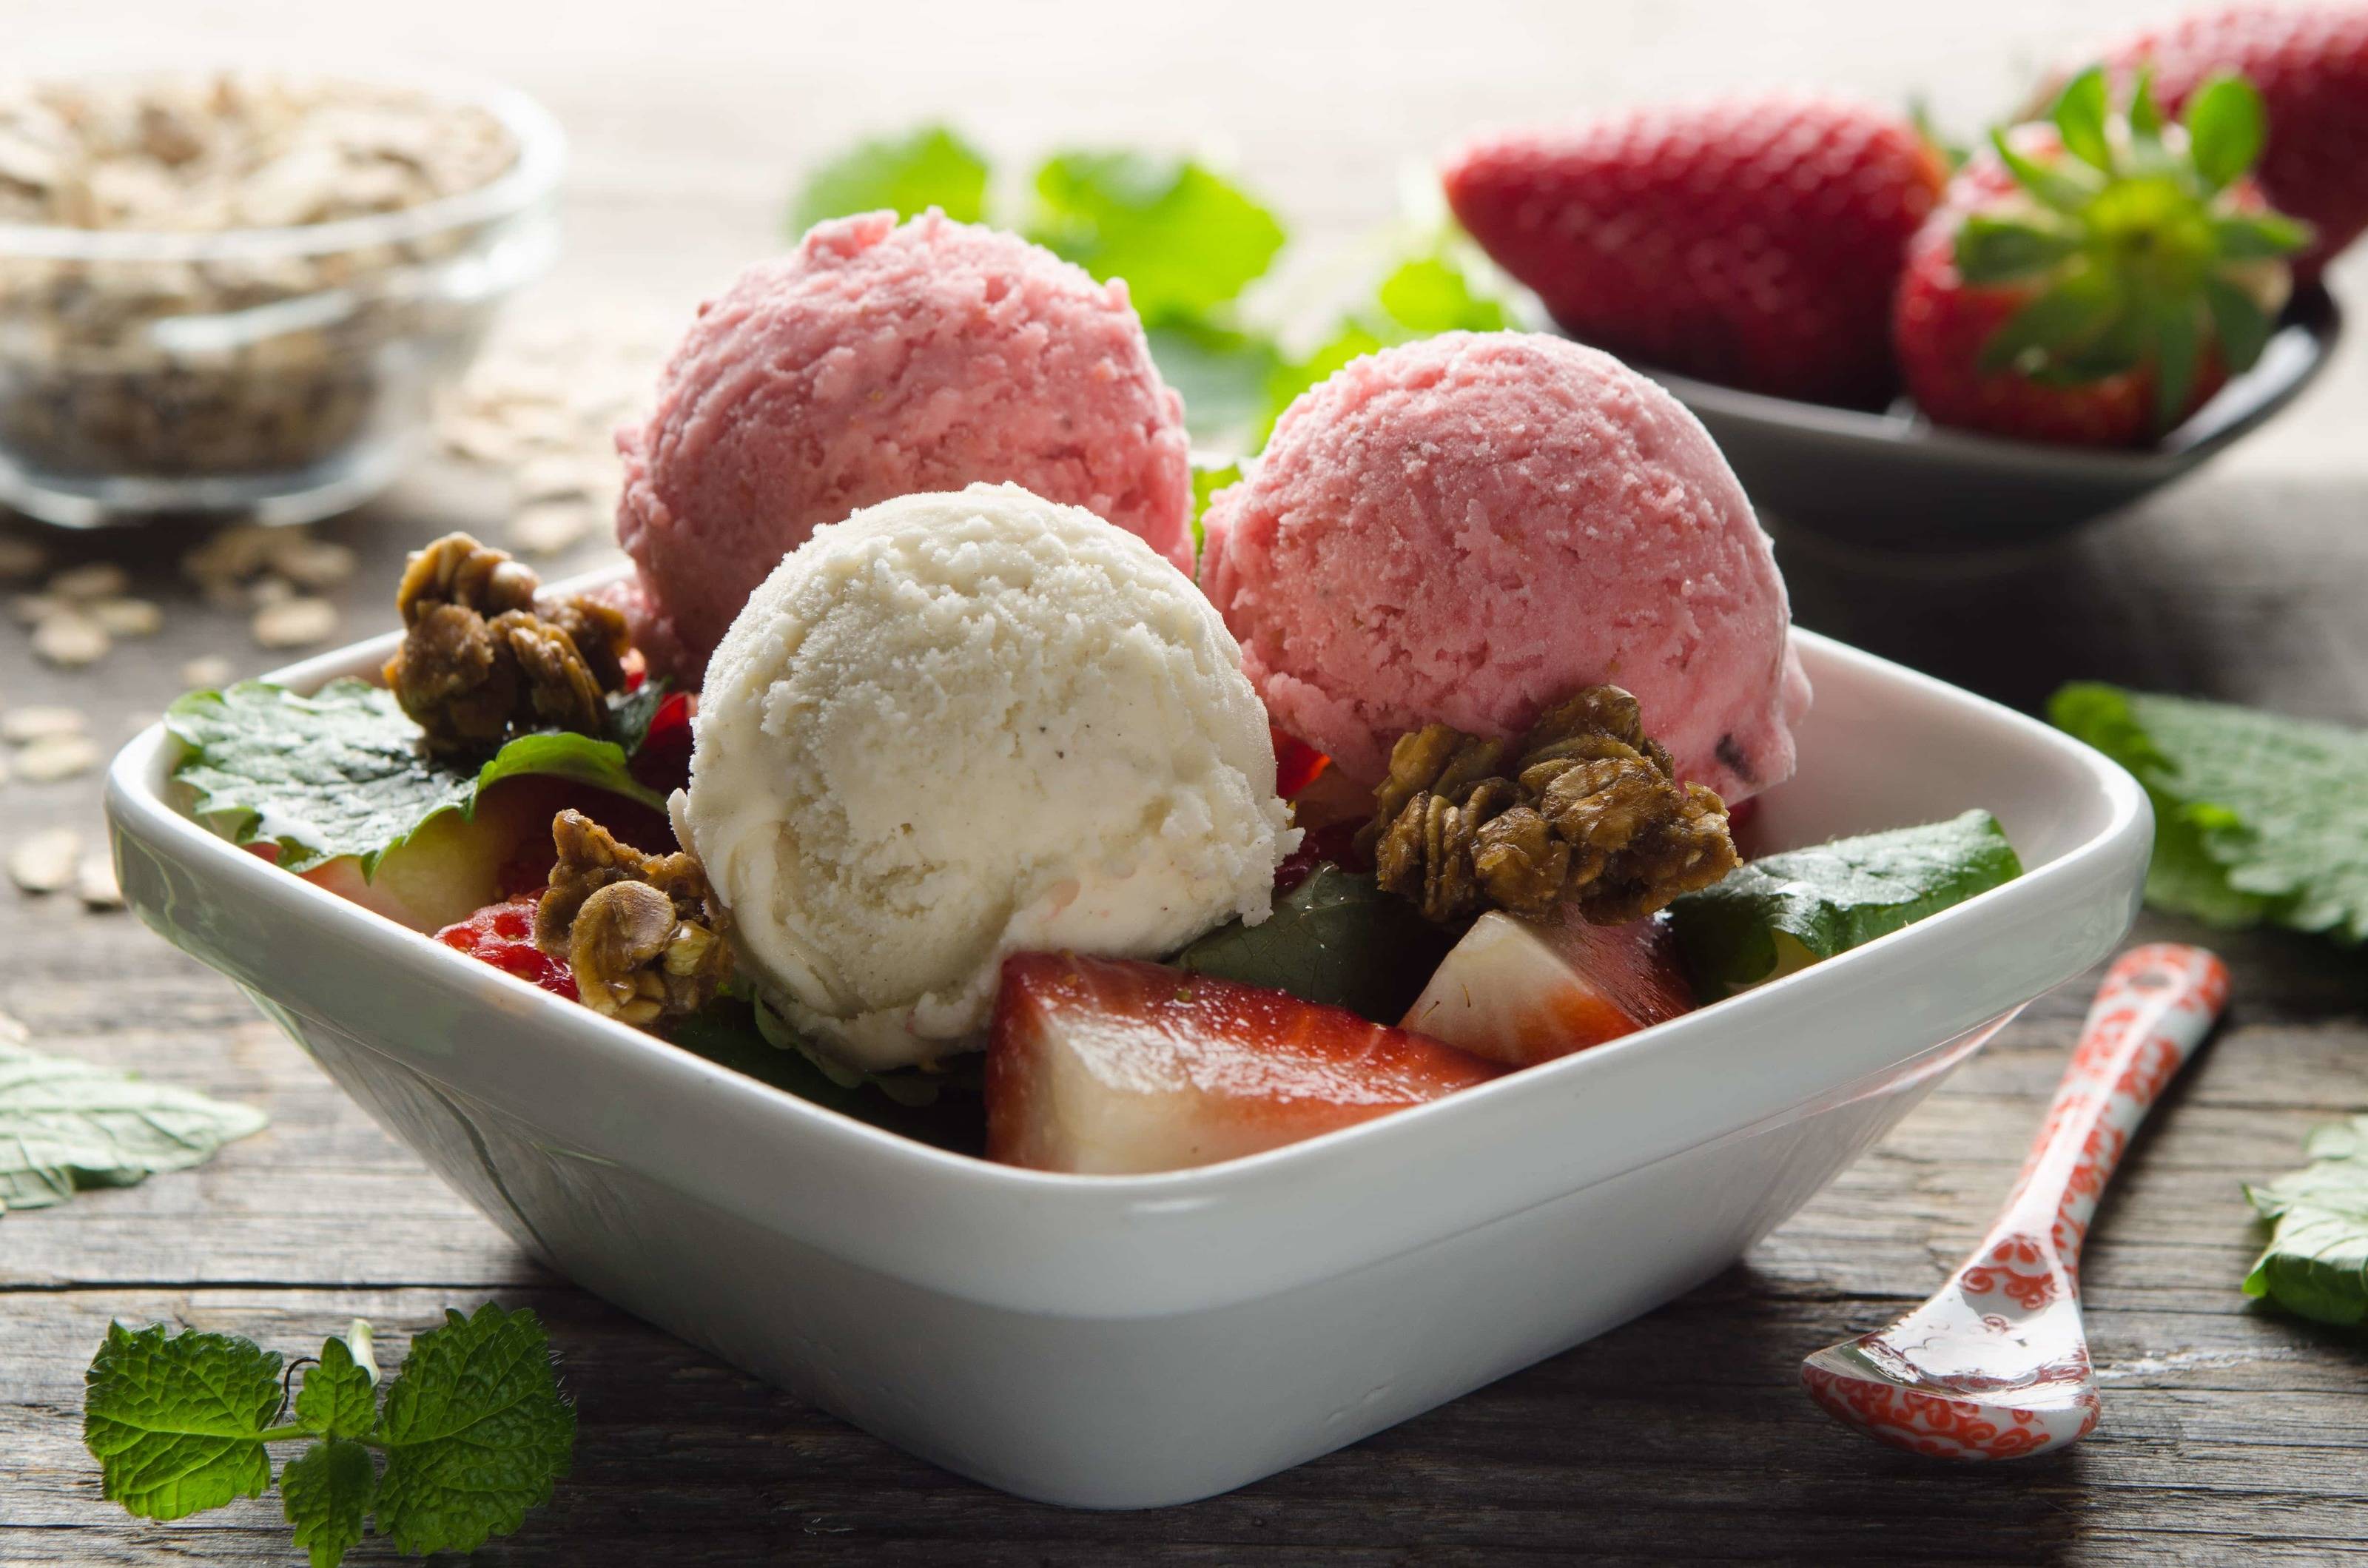 Vanille-Erdbeer-Eisbecher mit Karamellknusper